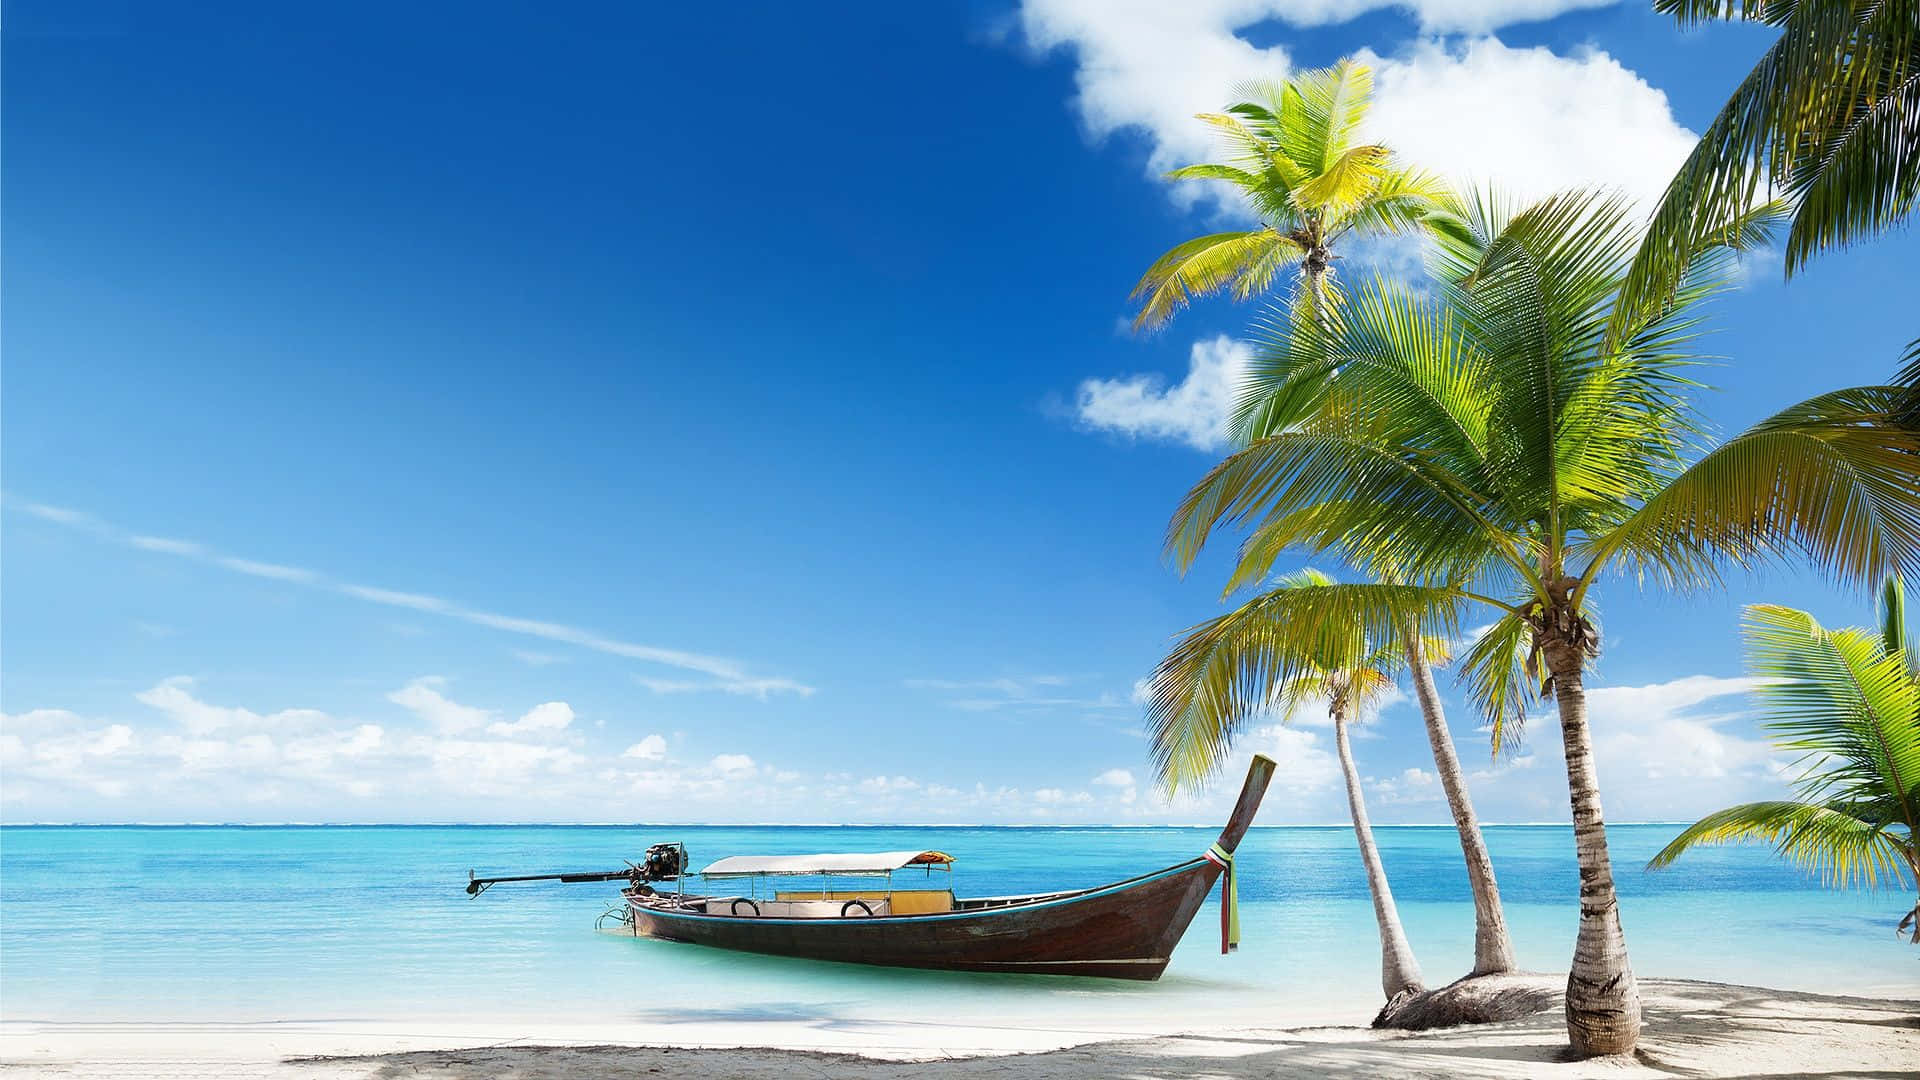 Enjoy the beauty of an idyllic Caribbean beach. Wallpaper